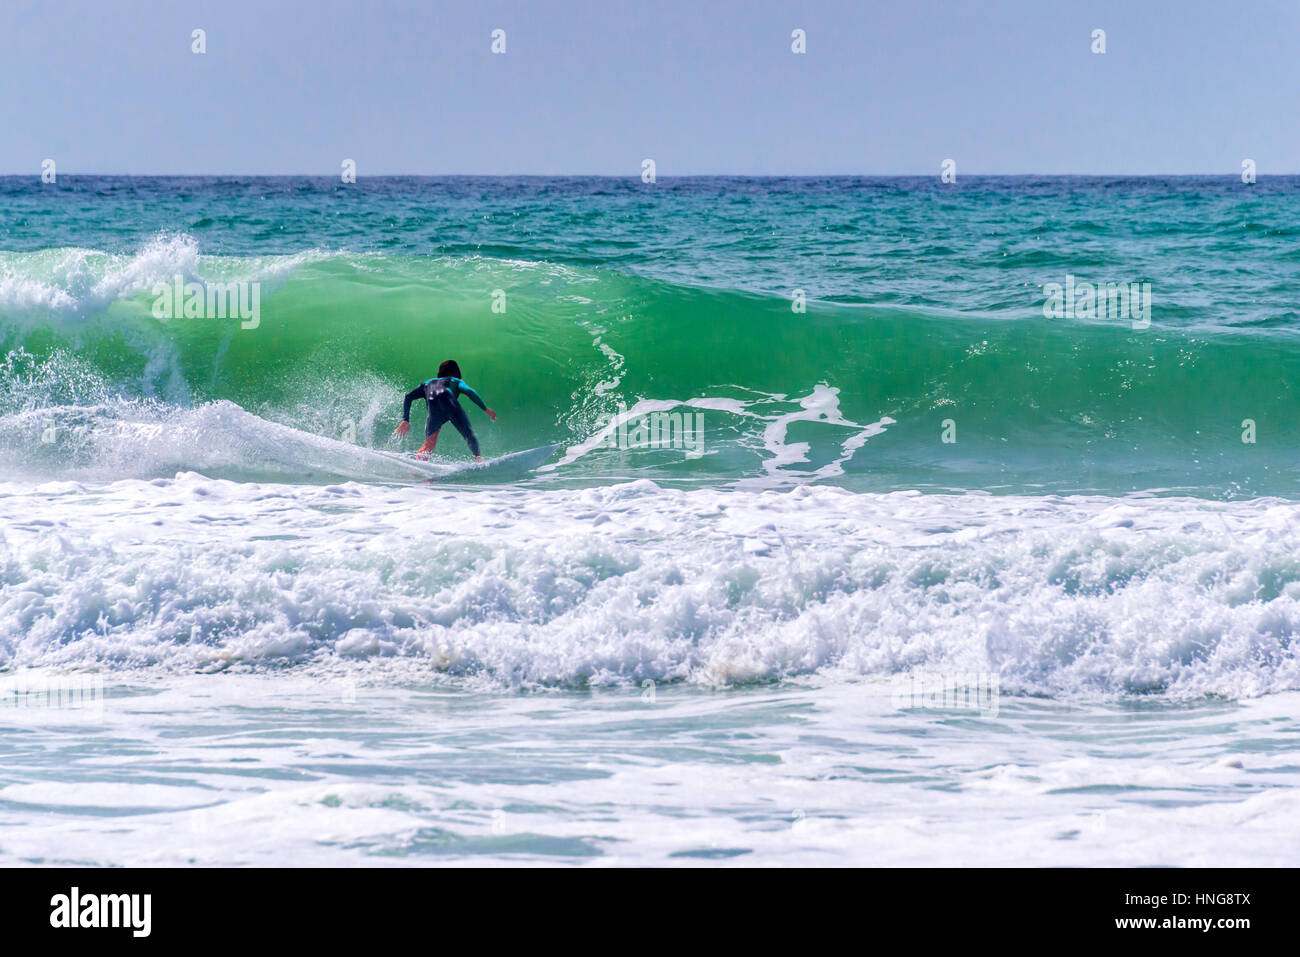 Circonscription Surfer une vague énorme pendant la compétition de surf à Lacanau, France Banque D'Images